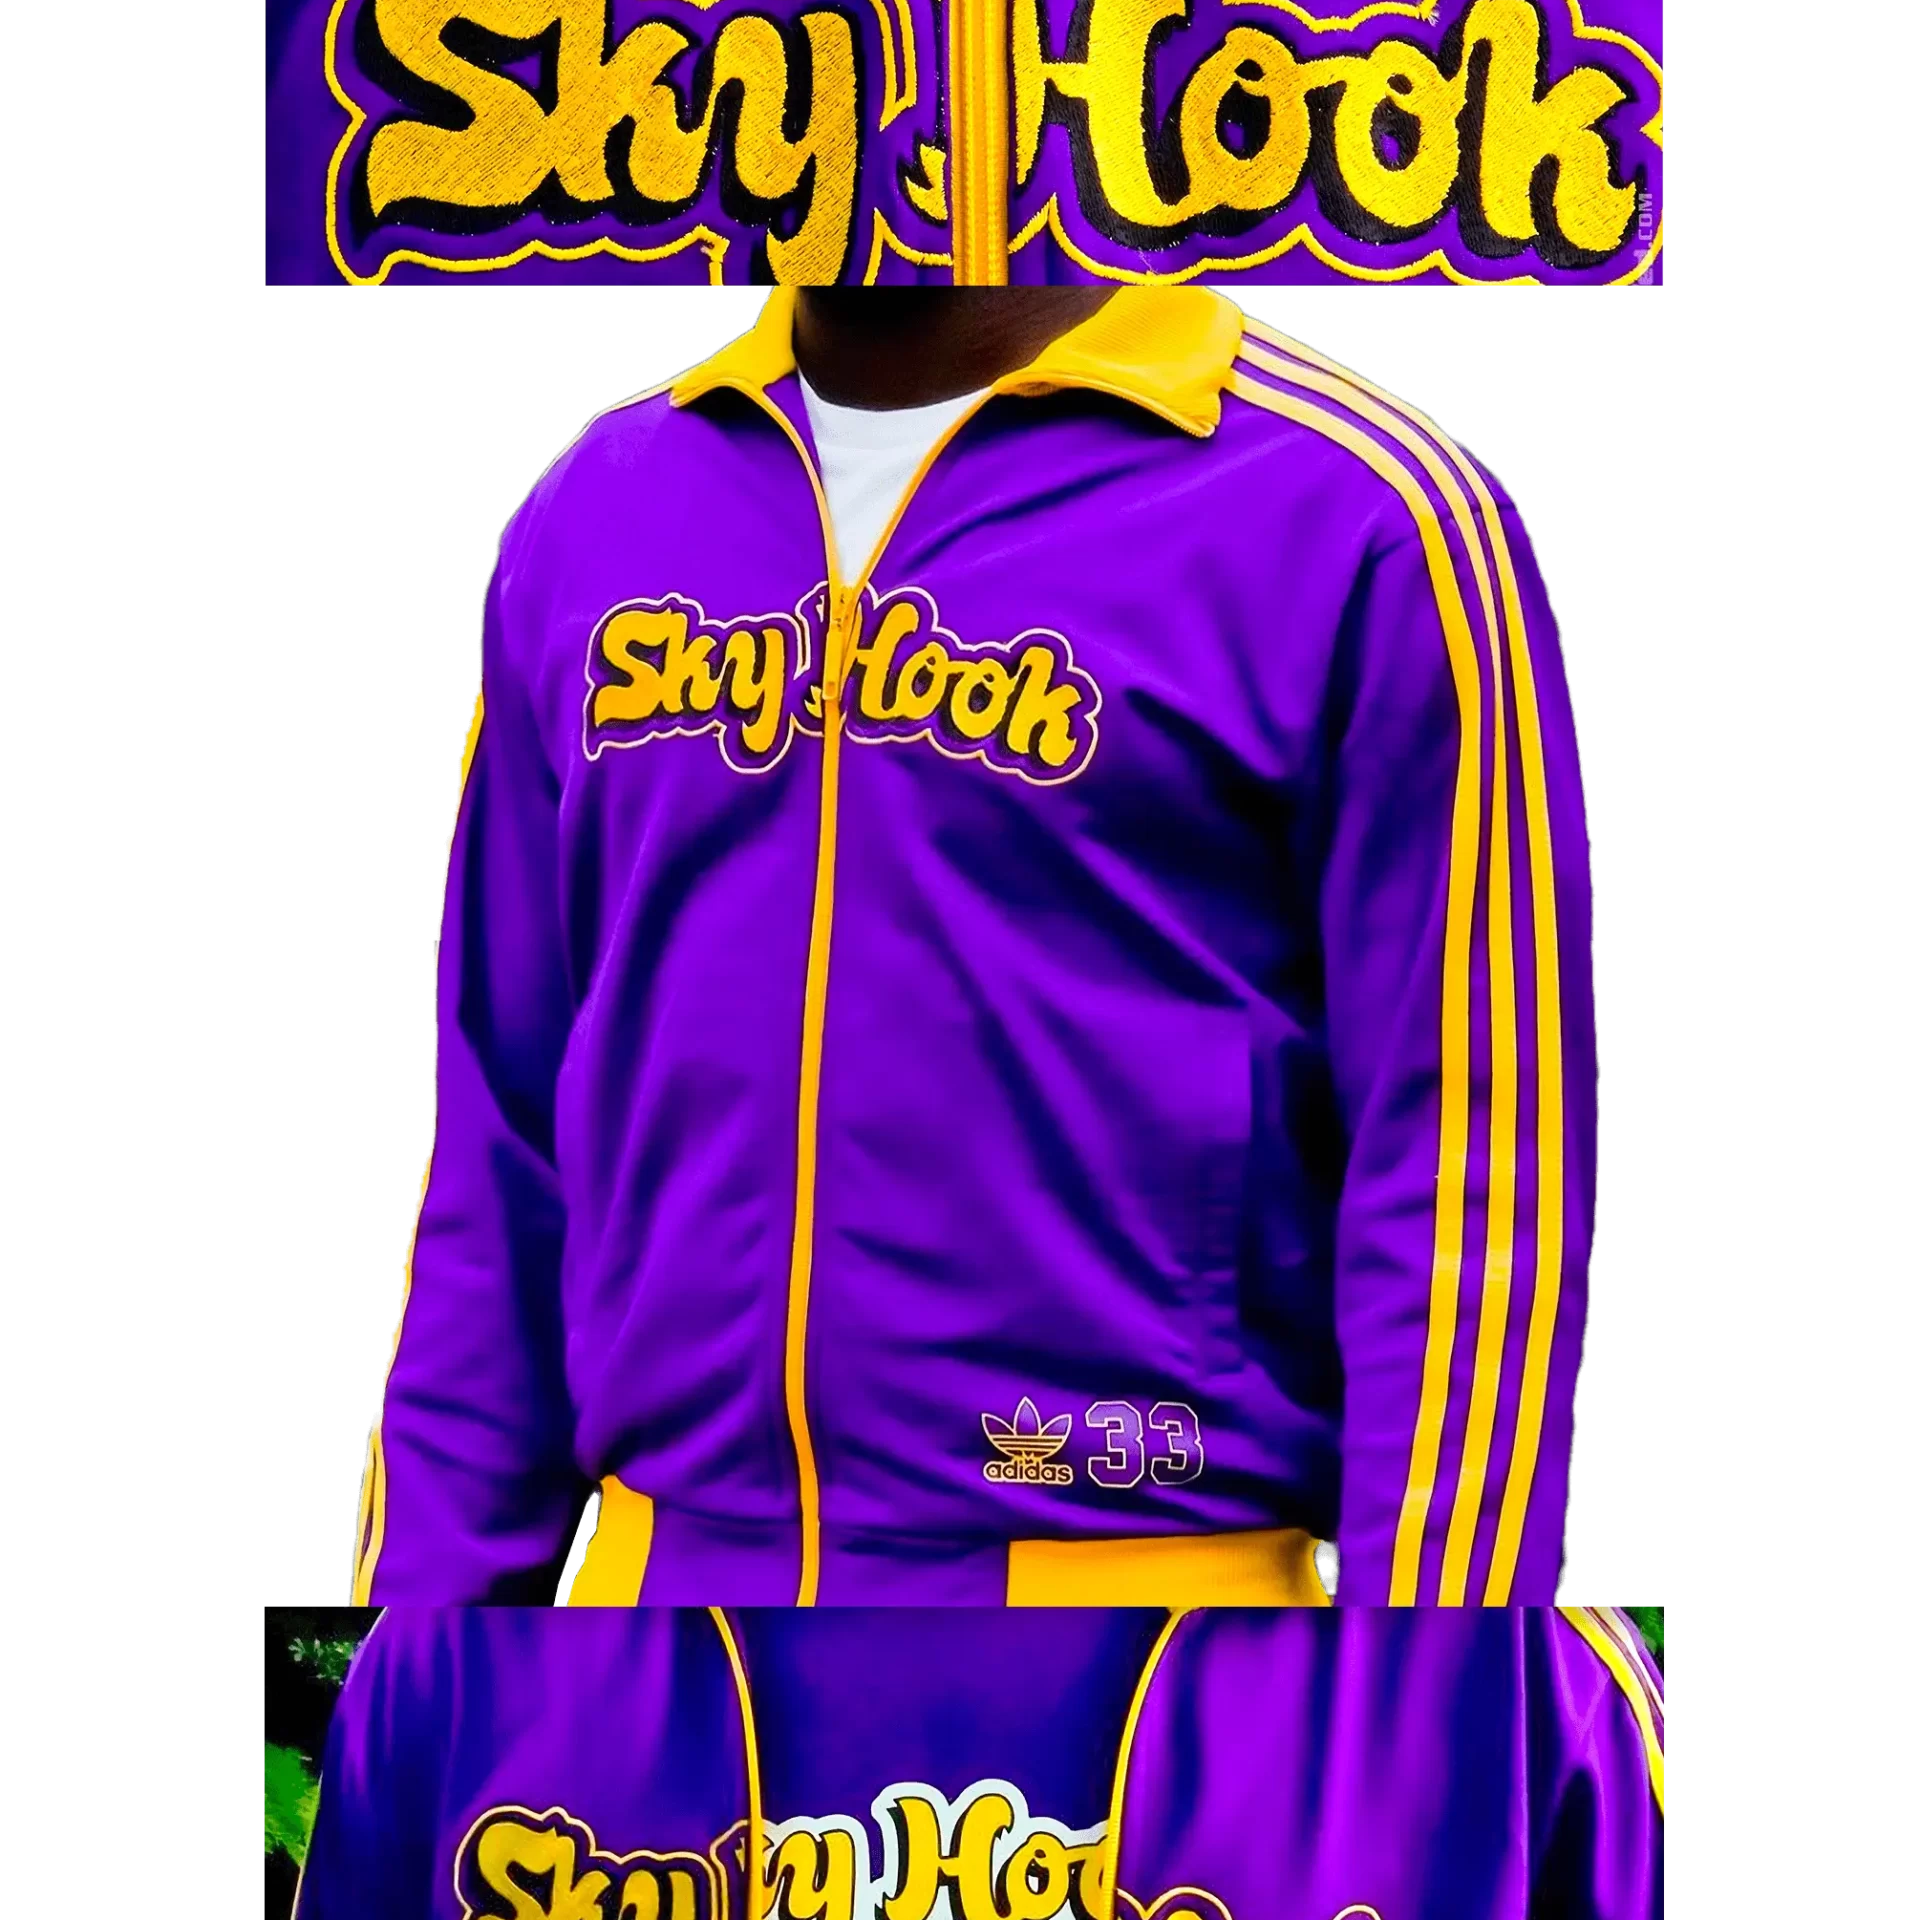 Men's 2004 SkyHook Lakers #33 Track Top by Adidas: Rookie (EnLawded.com file #lmchk75943ip2y124798kg9st)